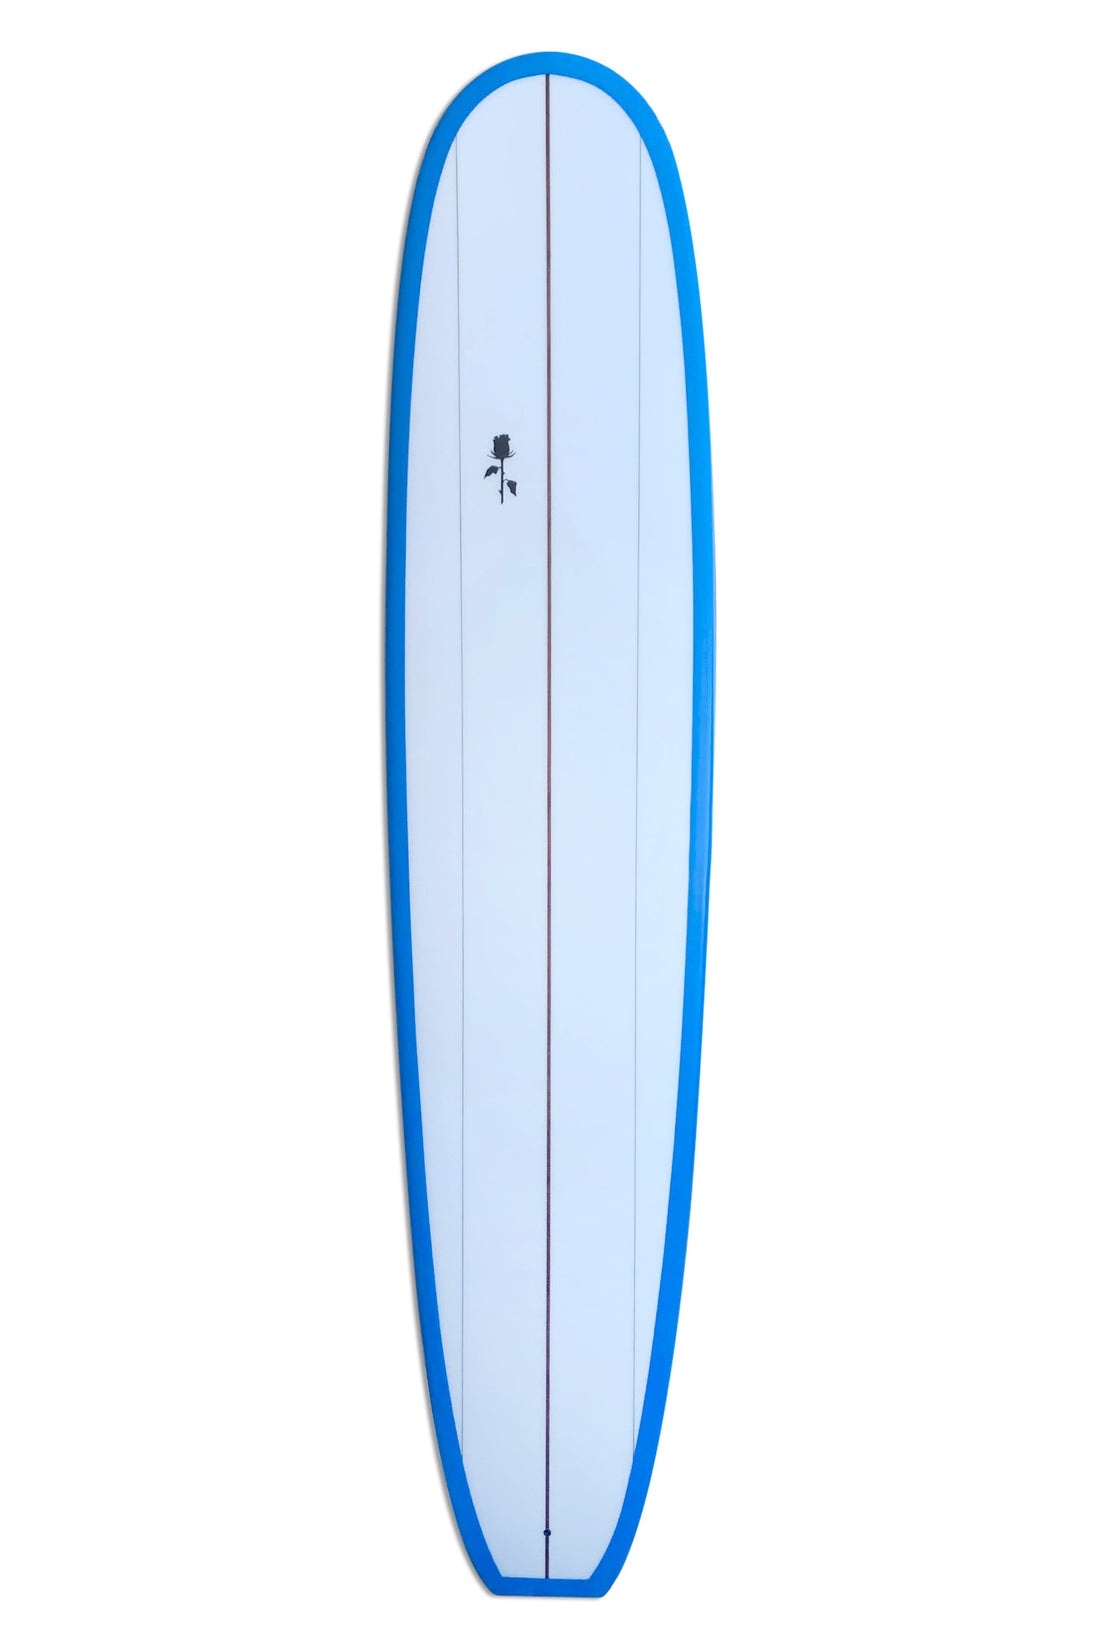 9'6 BLACK ROSE DARK HORSE - BLUE SURFBOARD BLACK ROSE   